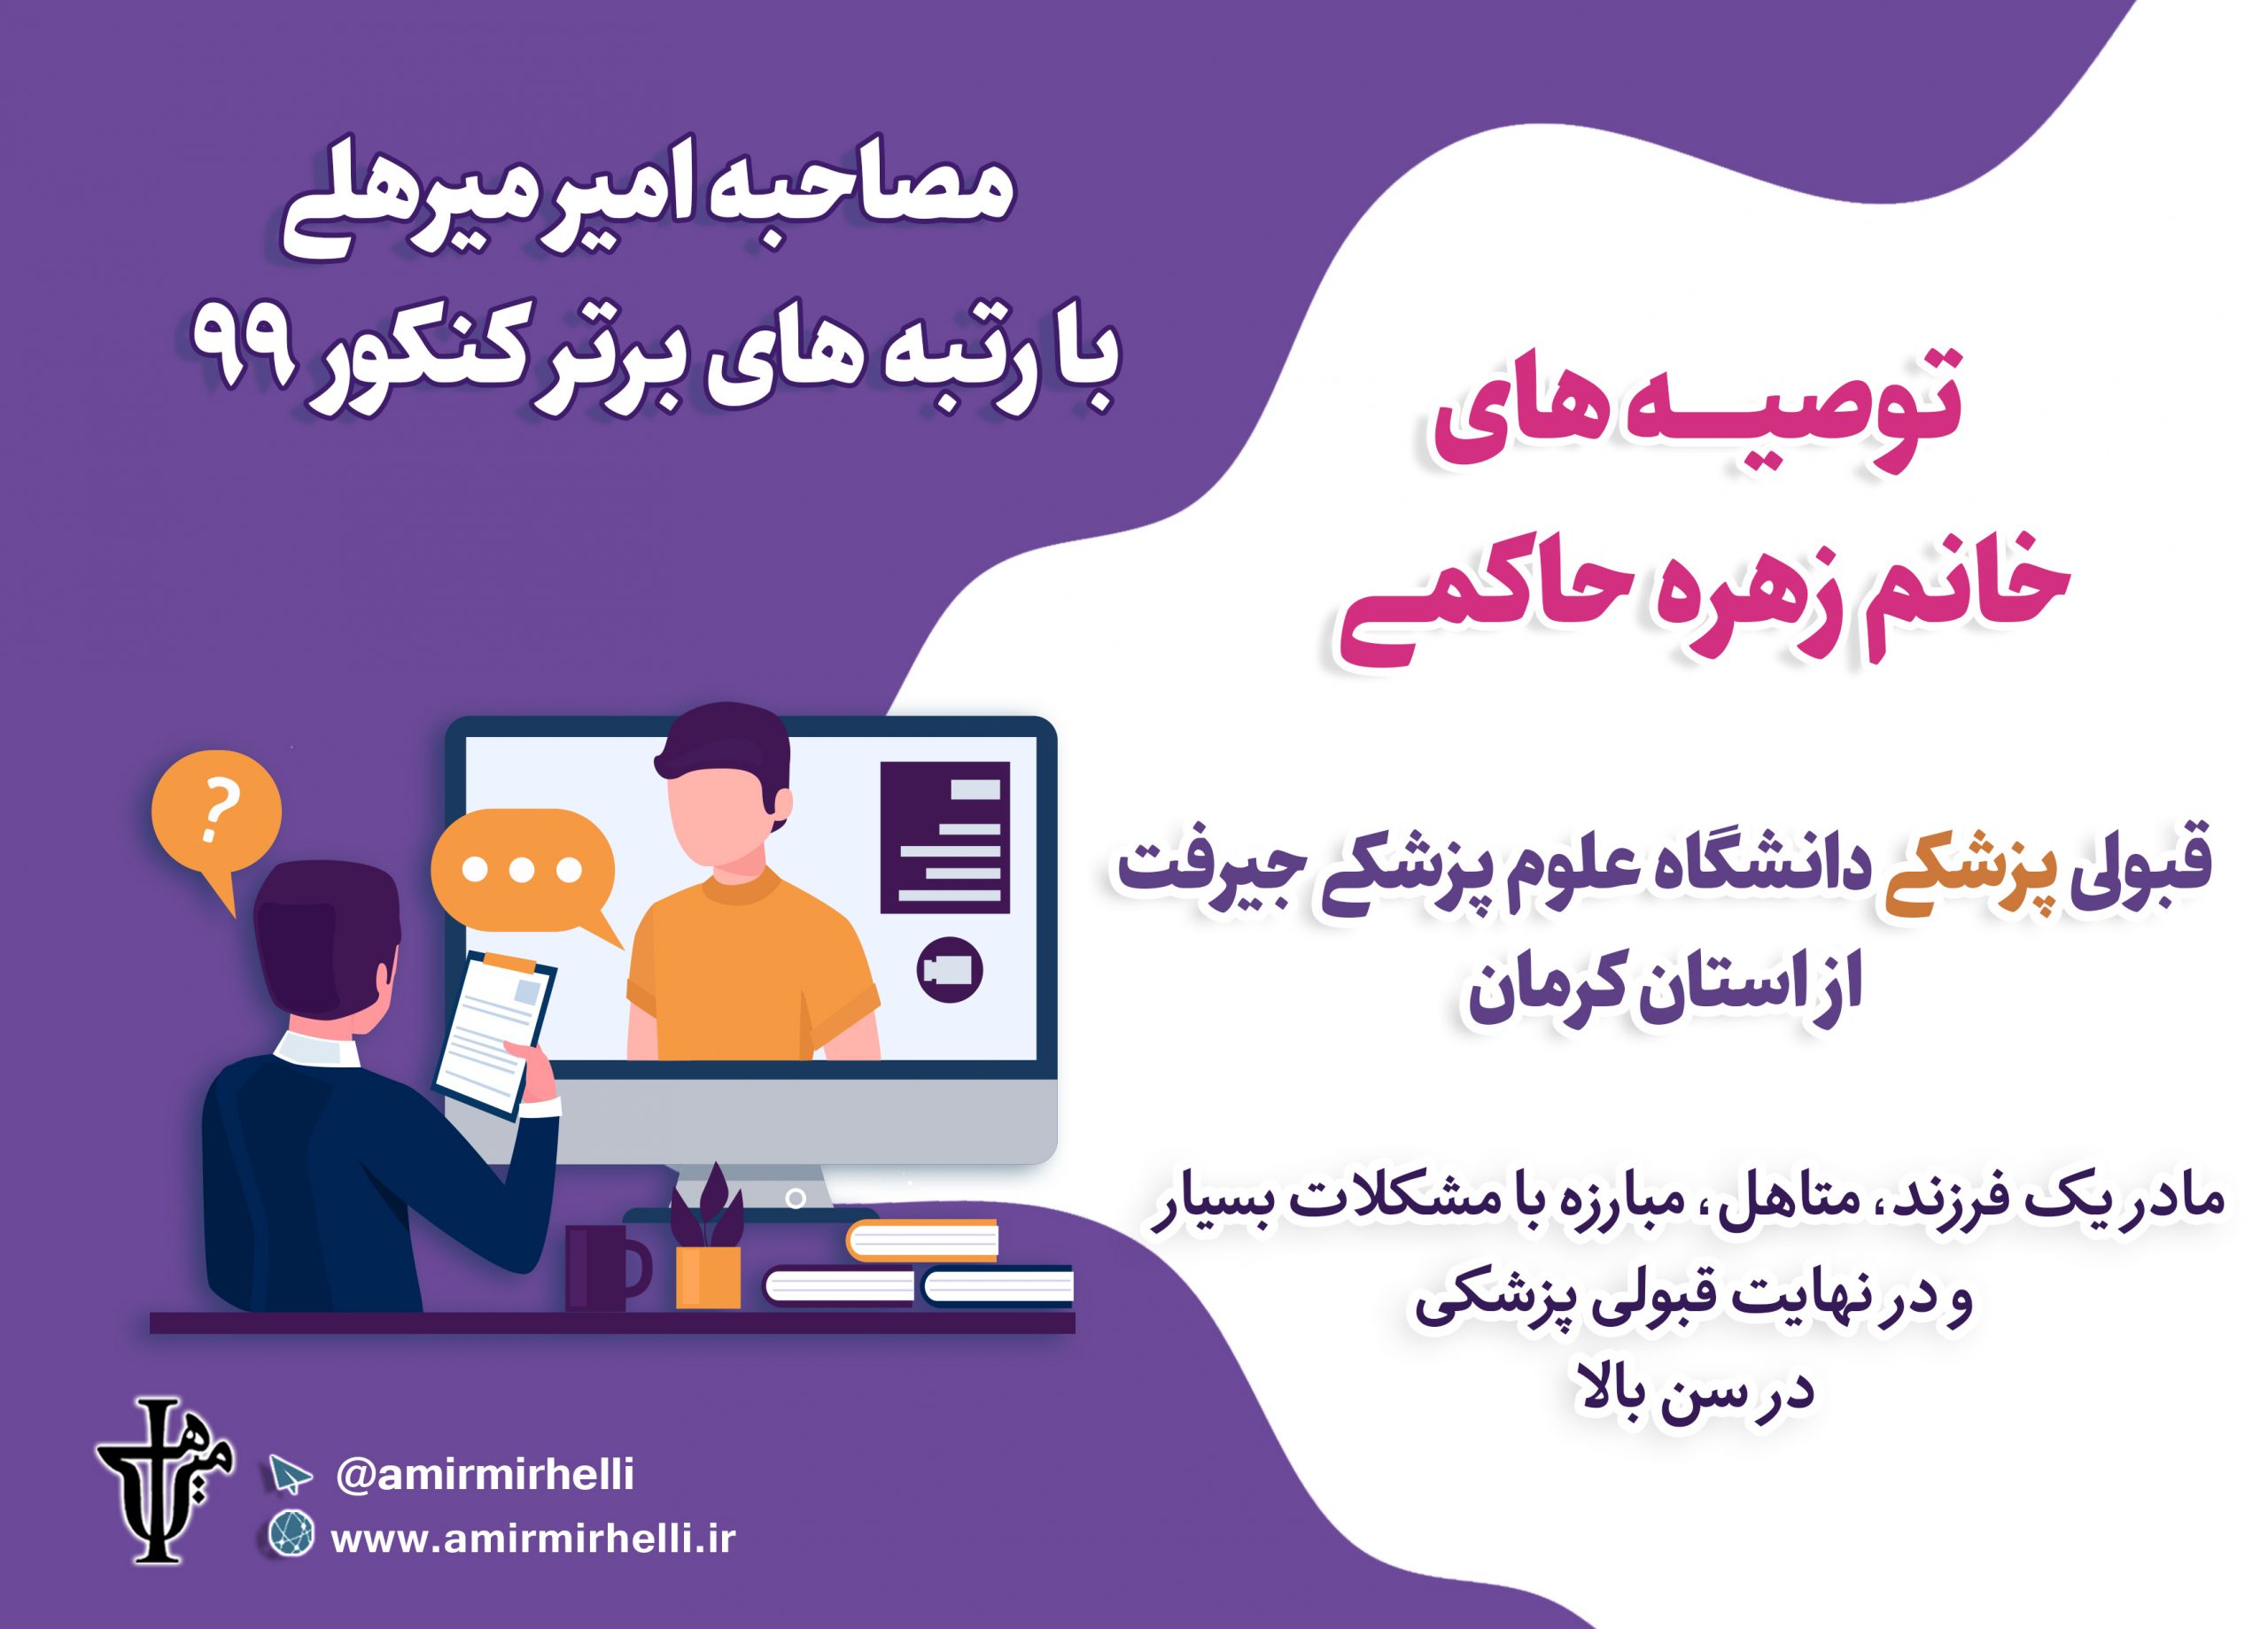 توصیه های خانم زهره حاکمی، قبولی پزشکی دانشگاه علوم پزشکی جیرفت کنکور 99 از استان کرمان